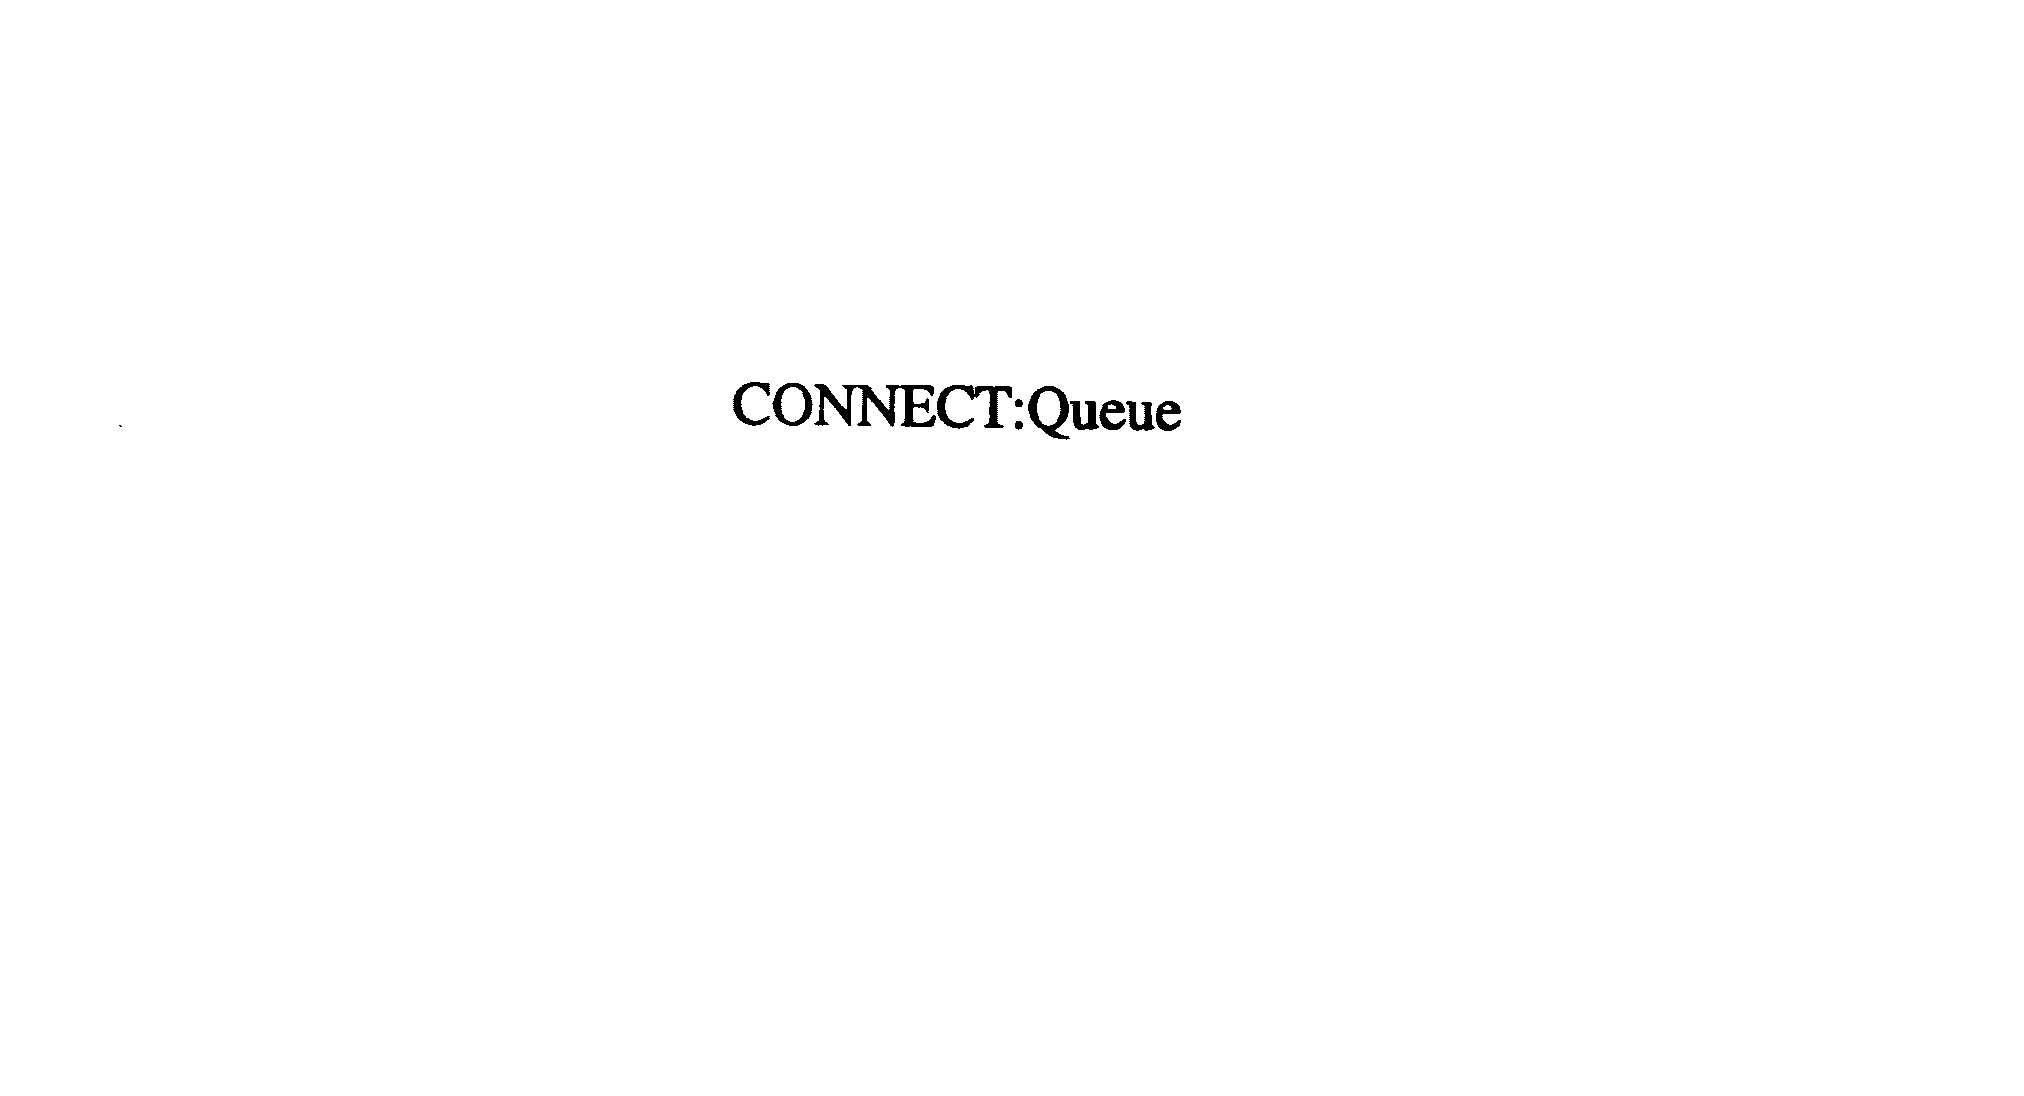  CONNECT:QUEUE